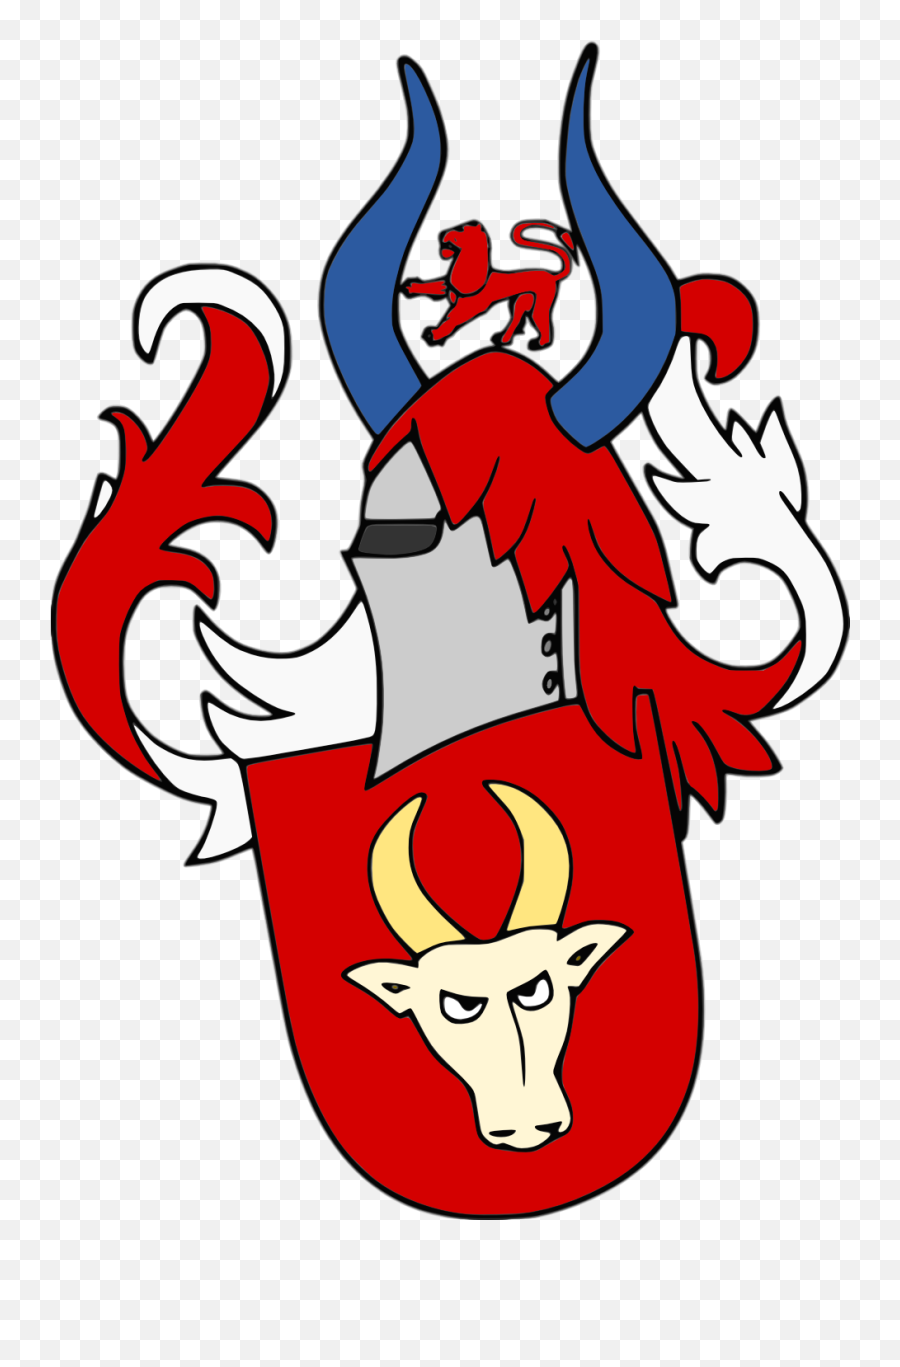 Filedjordje Stefanovic Brankovicpng - Wikimedia Commons Brankovici Grb Emoji,Ghostbuster Logo